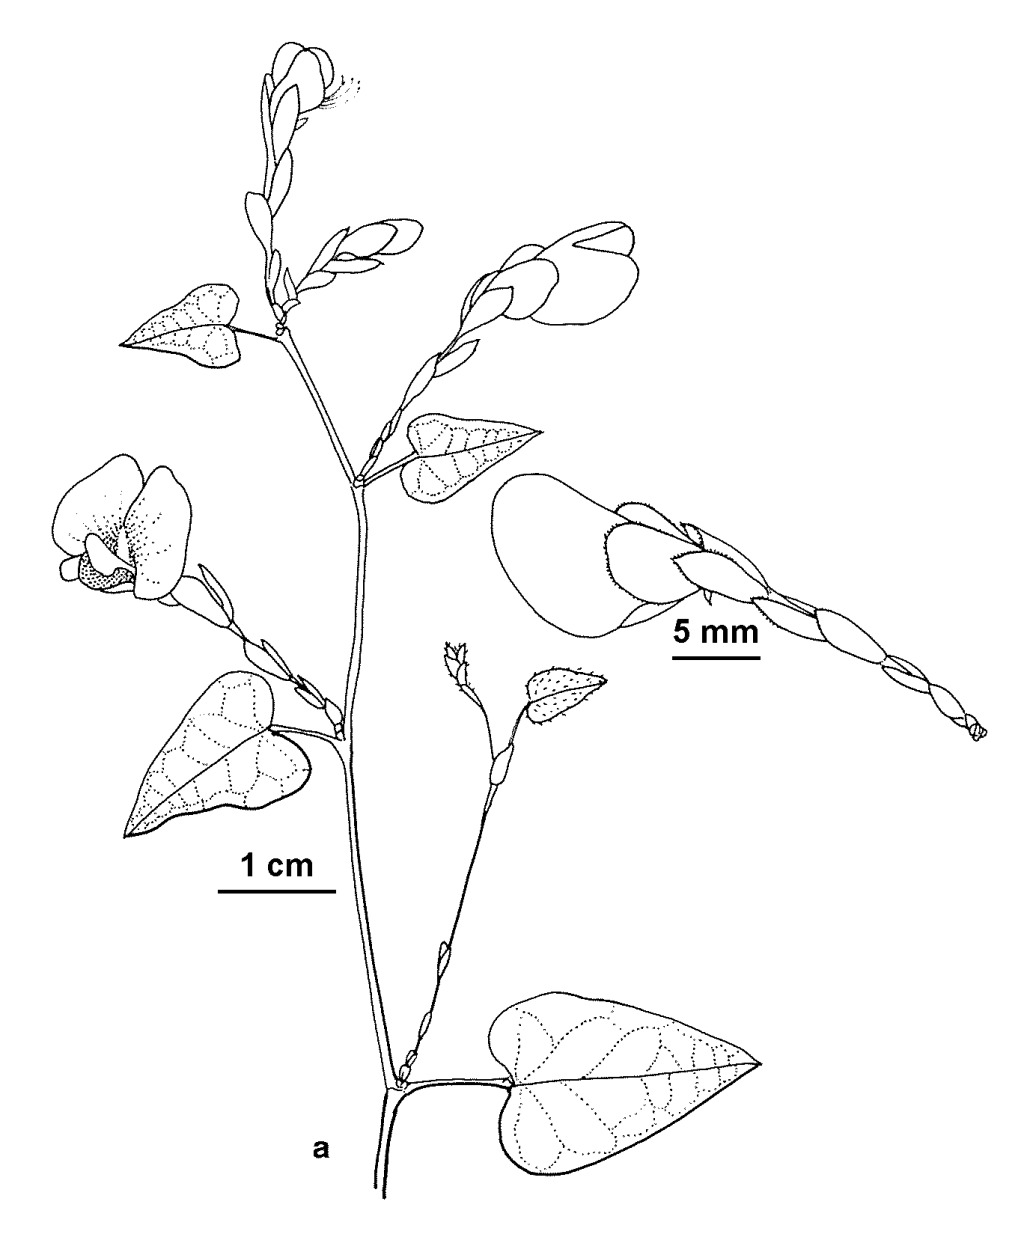 Platylobium alternifolium (hero image)